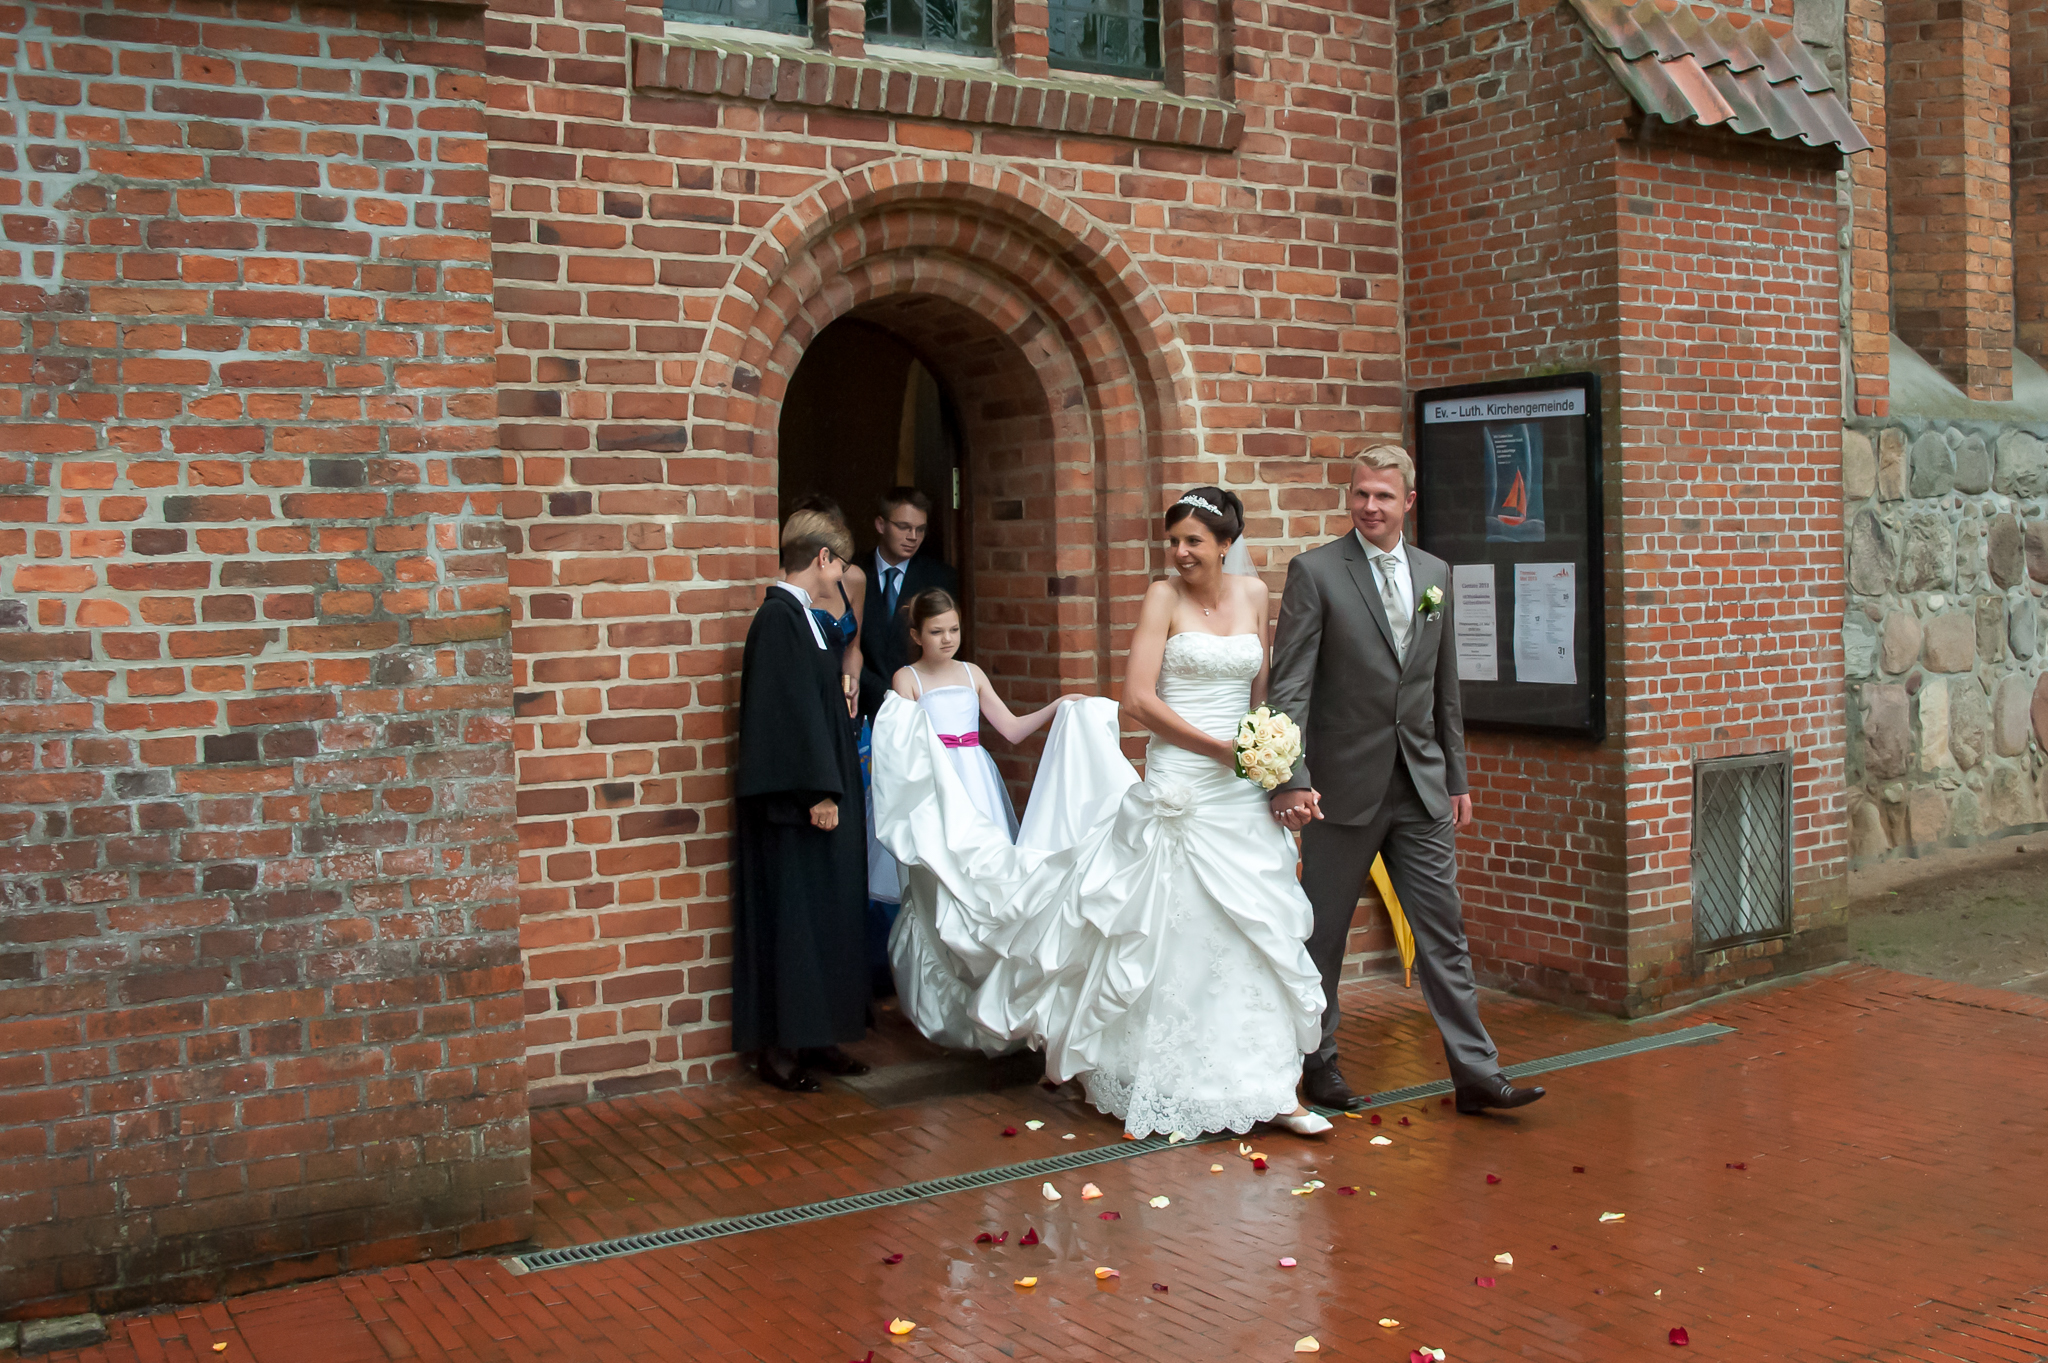 Brautpaar verlässt die Kirche bei Regen